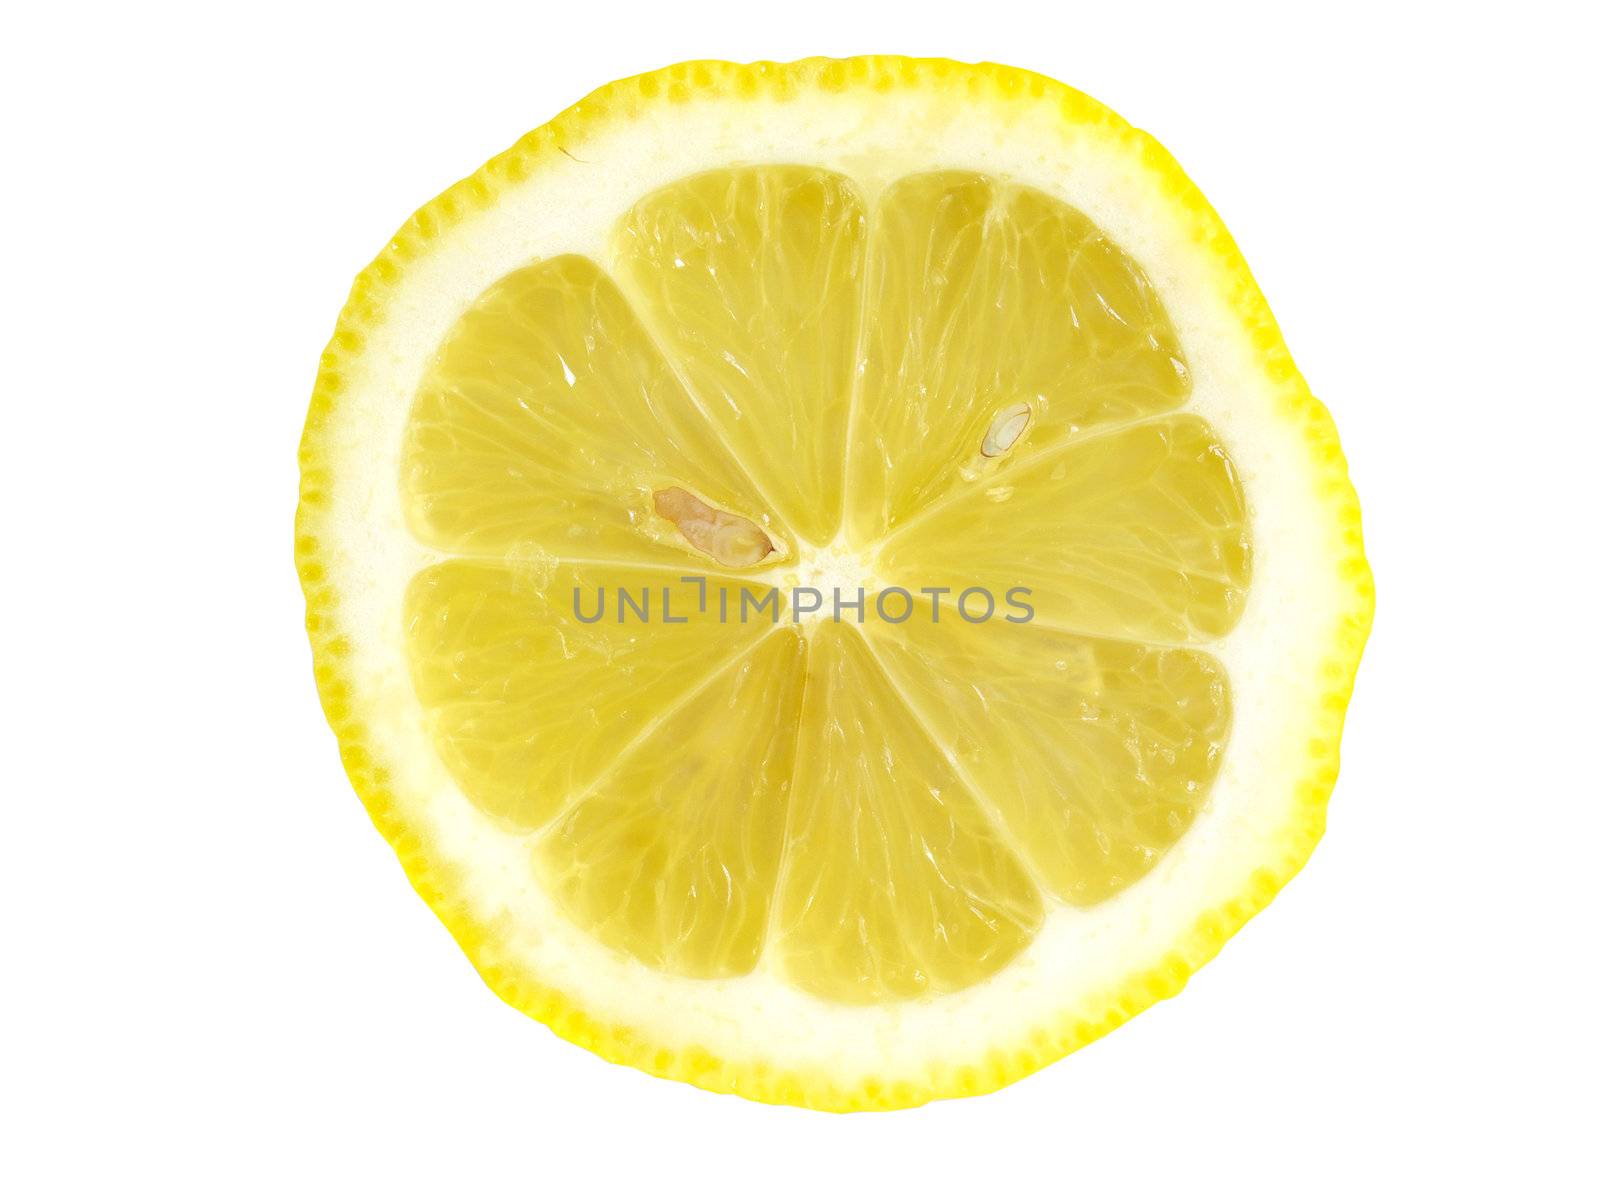 Two lemons by K_Kot